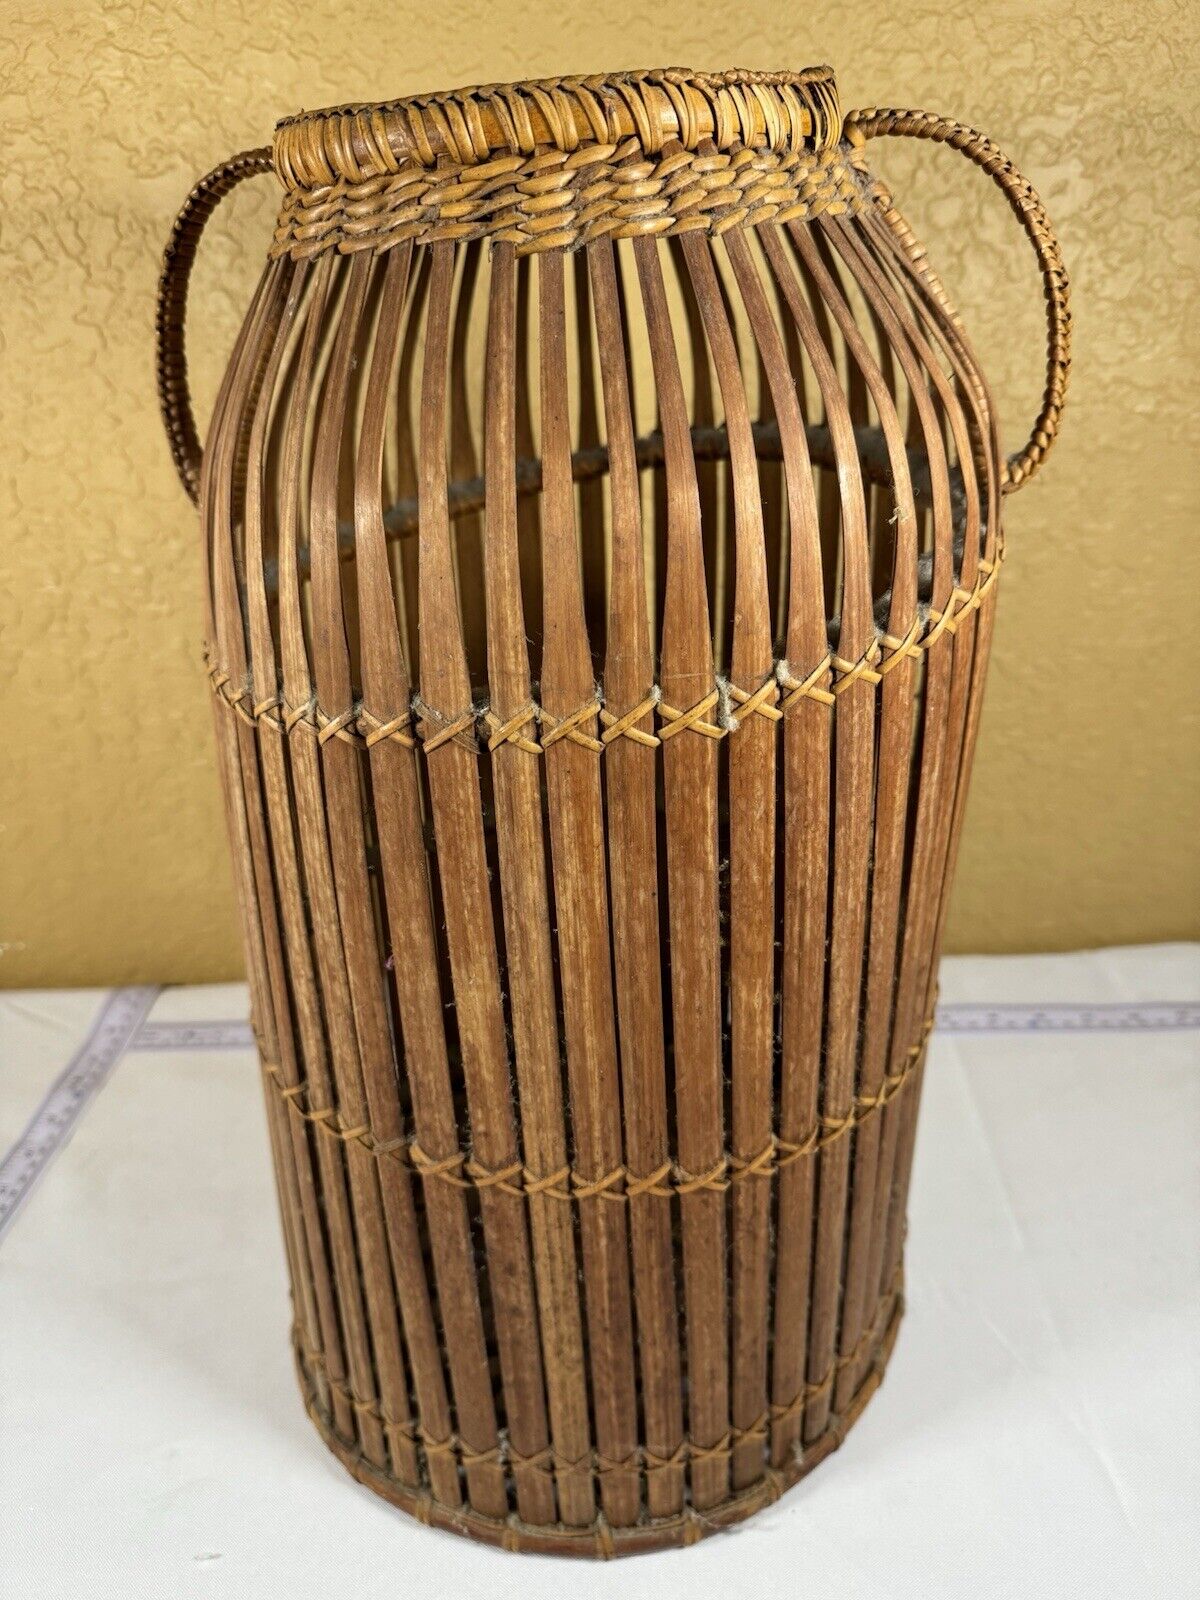 Tall Vintage Wicker Rattan Vase Basket 2 Handled Basket